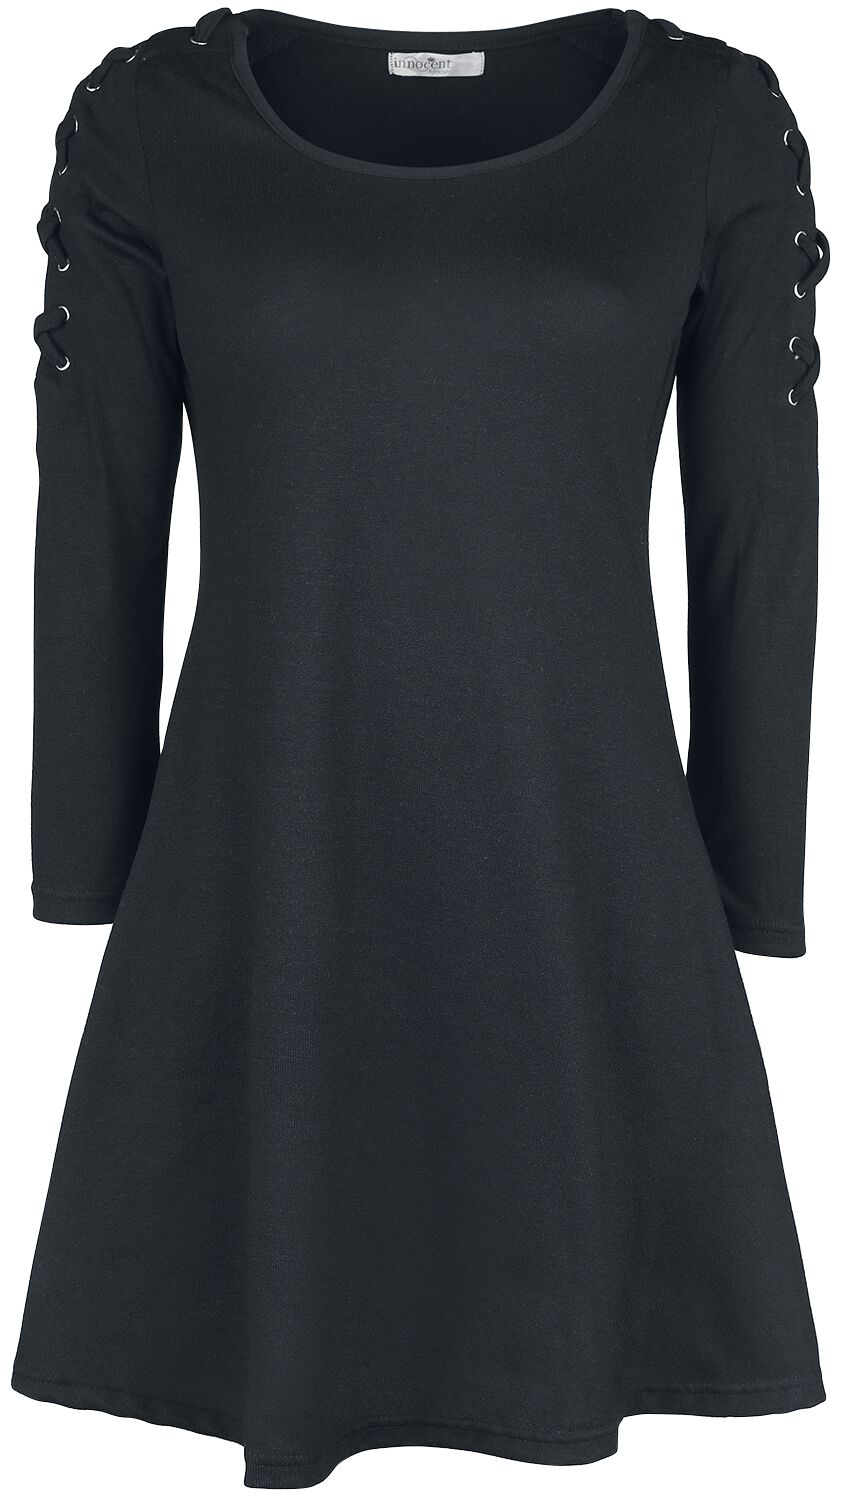 Innocent Kurzes Kleid - Collette Dress - S bis 4XL - für Damen - Größe 4XL - schwarz